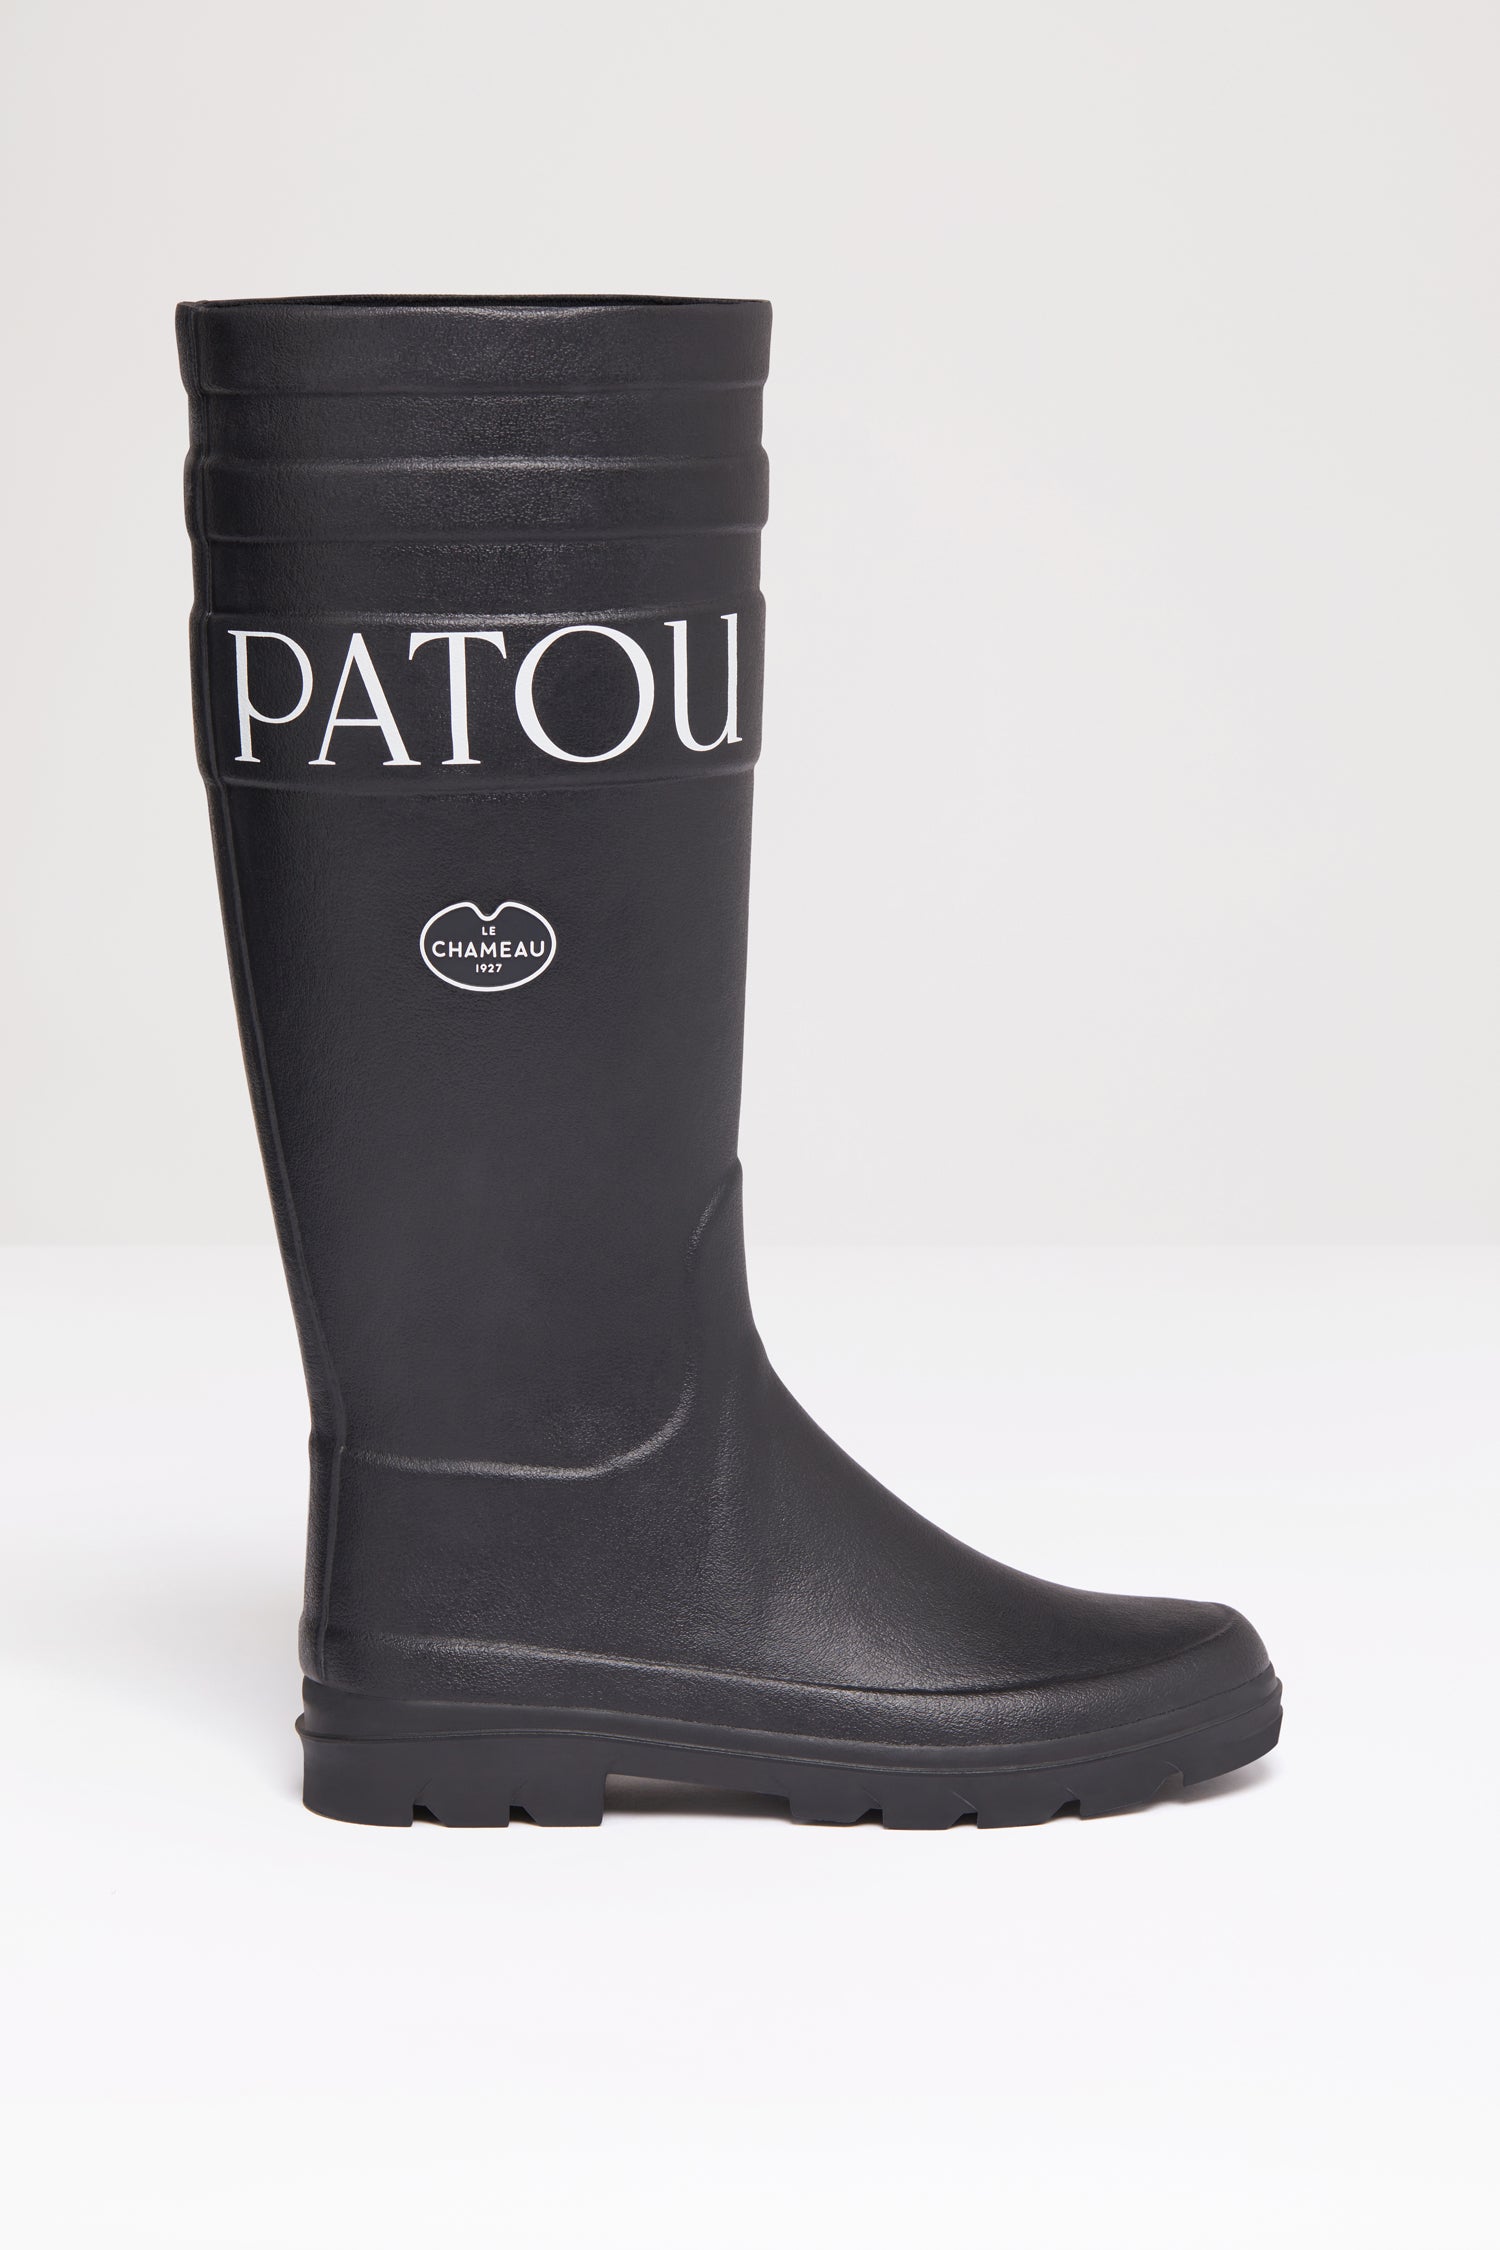 Patou | Patou x Le Chameau rubber boots